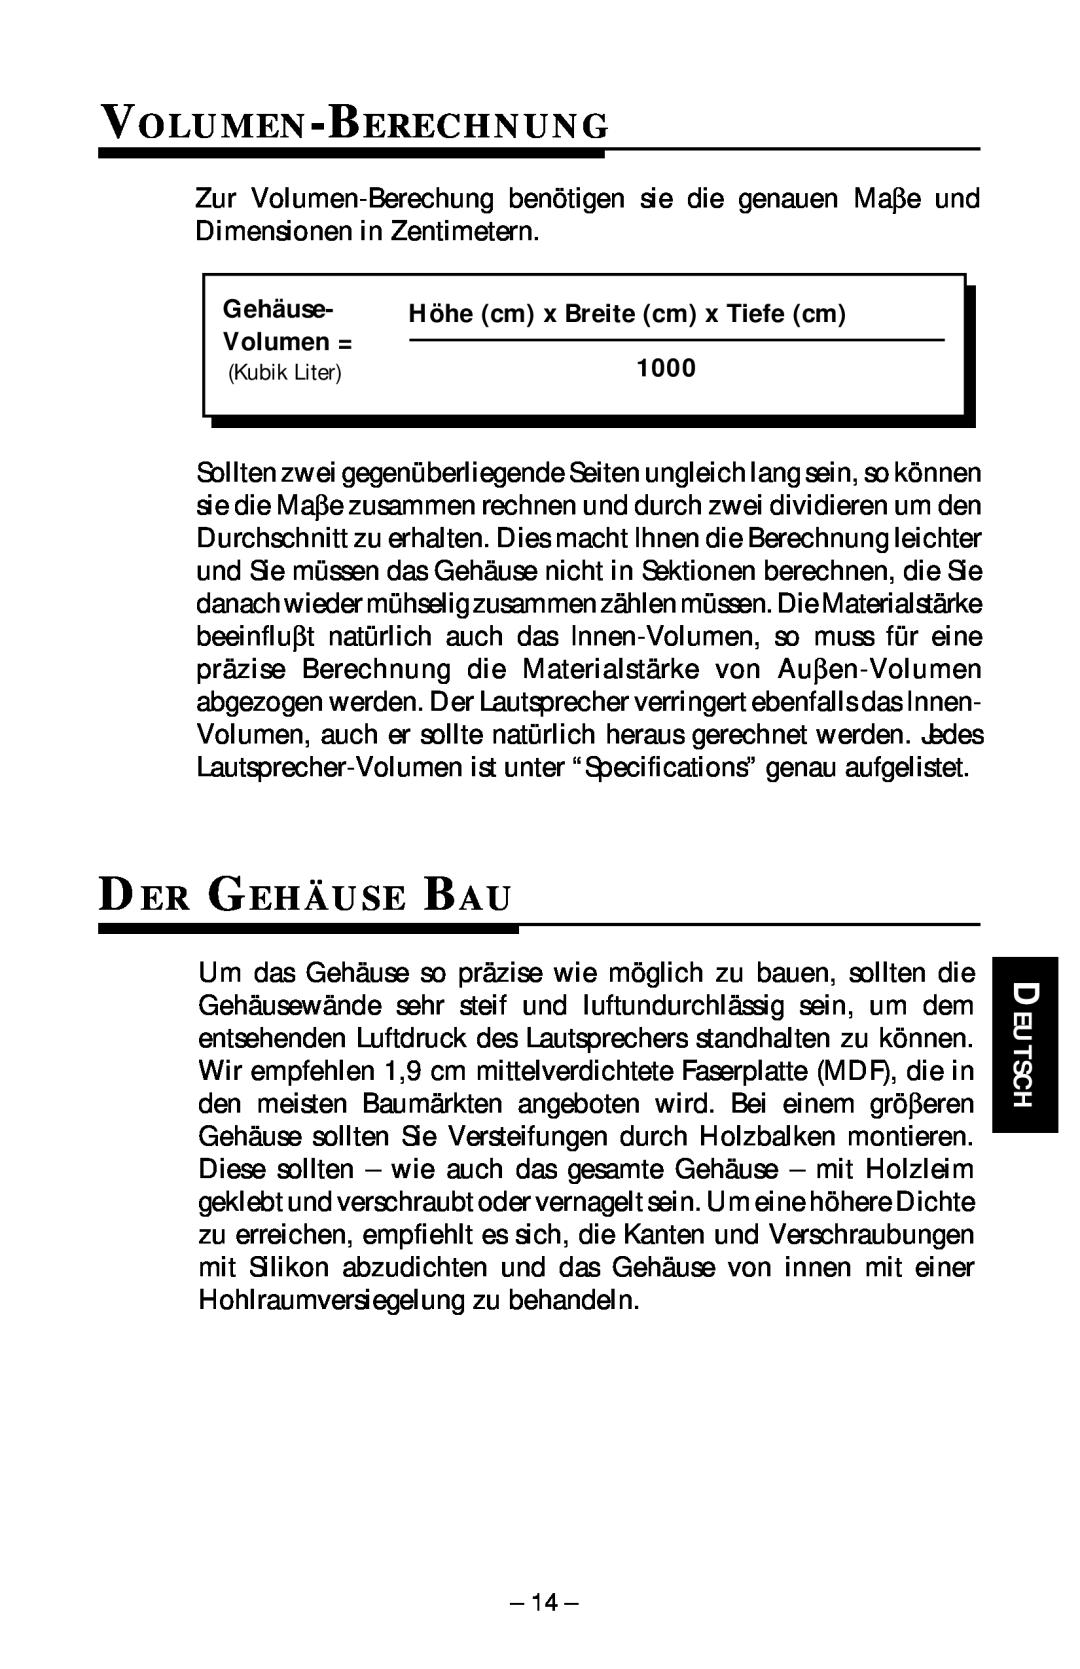 Rockford Fosgate RFP-1415/1815, RFP-1408/1808, RFP-1418/1815, RFP-1412/1812 Volumen-Berechnung, Der Gehäuse Bau, Kubik Liter 